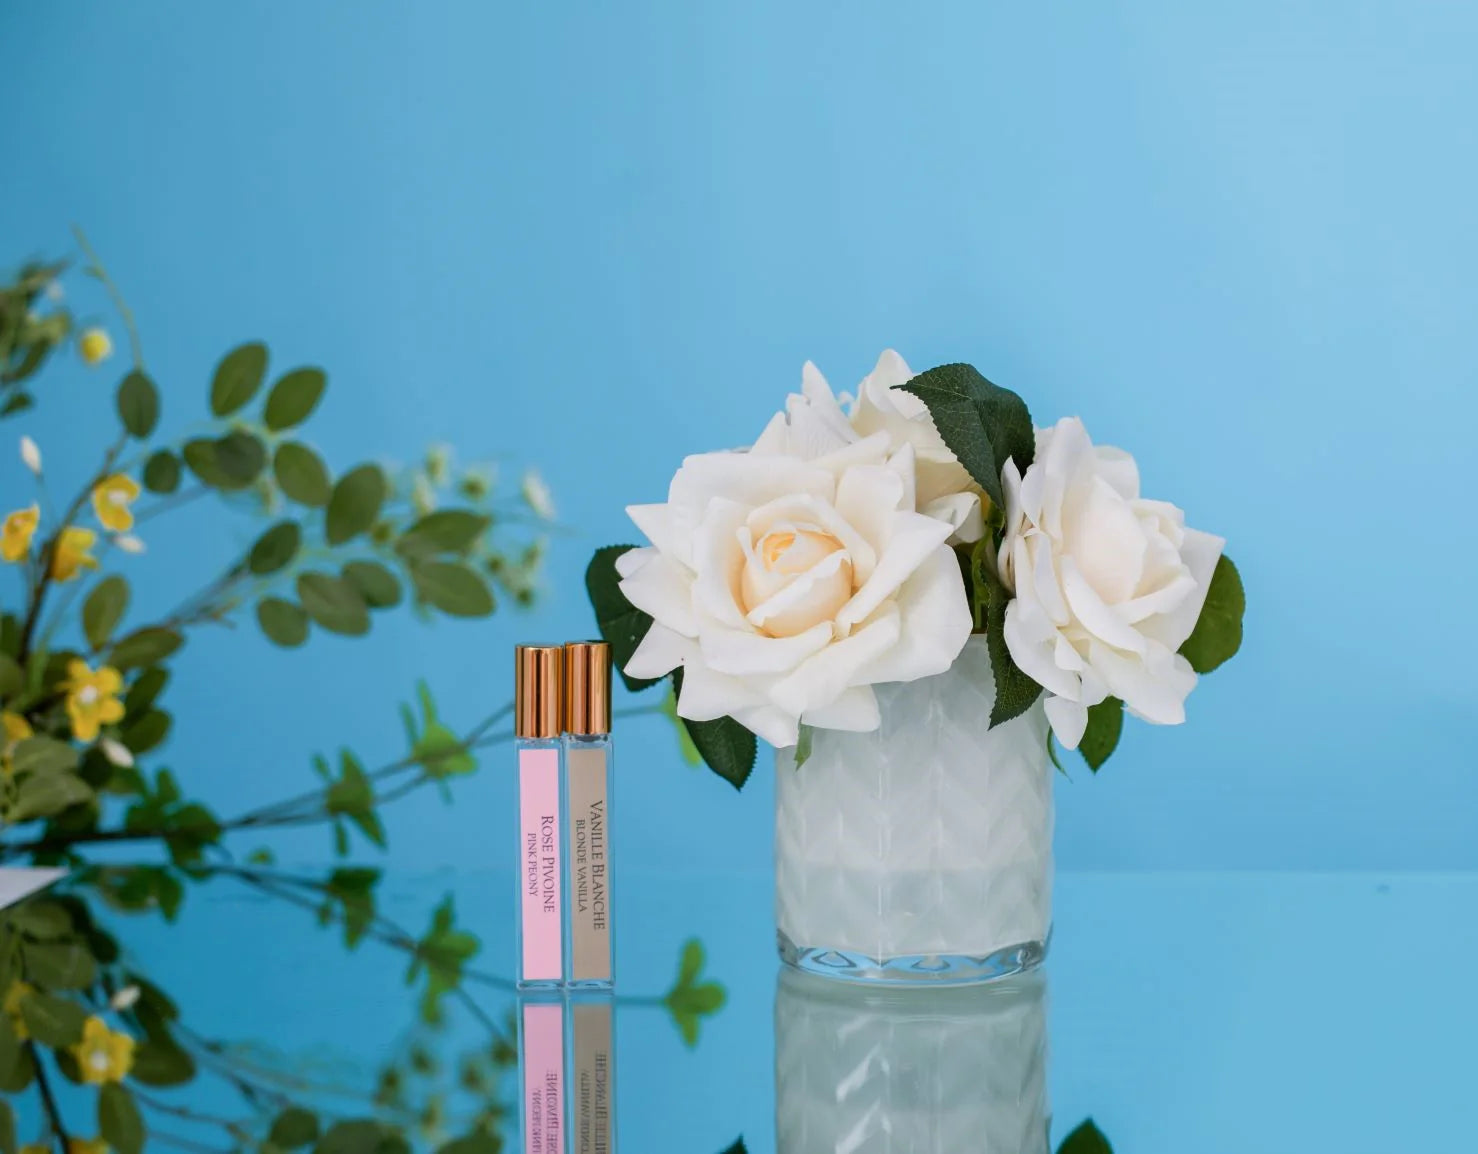 herringbone duftblume und zwei duftsprays auf blau spiegelndem tisch. blauer hintergrund 